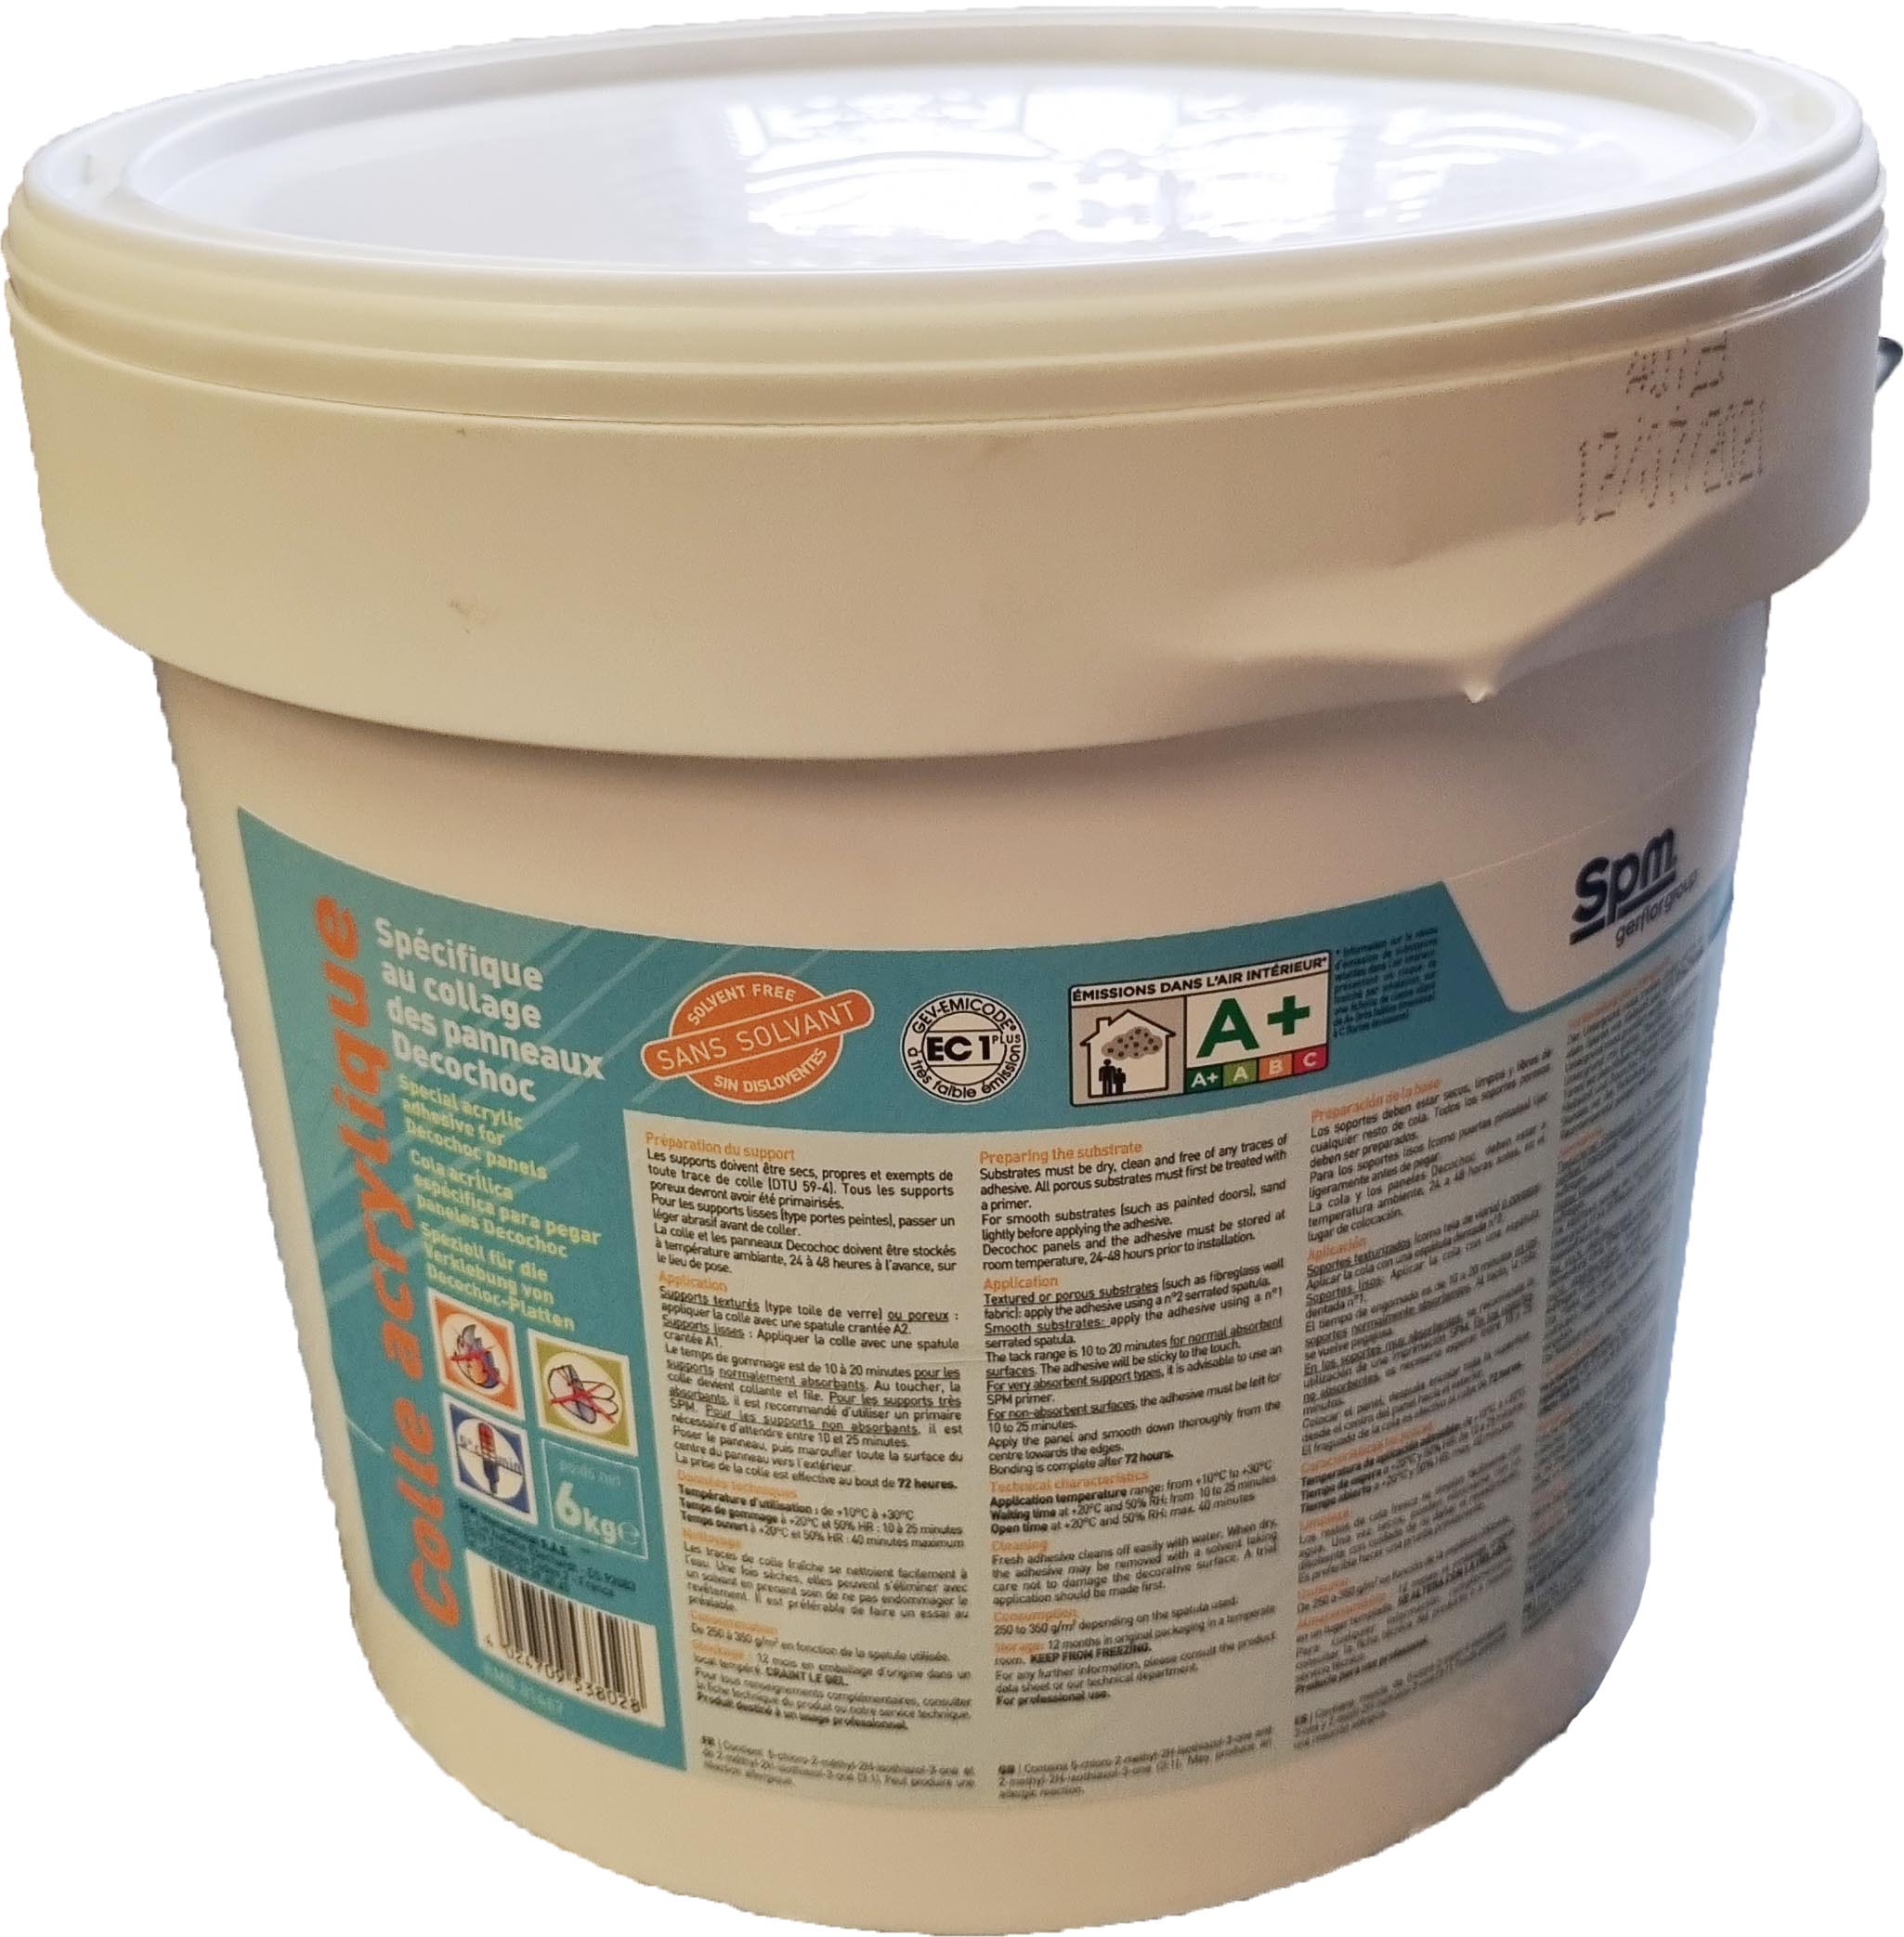 SPM - Acrylklebstoff, 6 kg Eimer - schützen, gestalten, reparieren